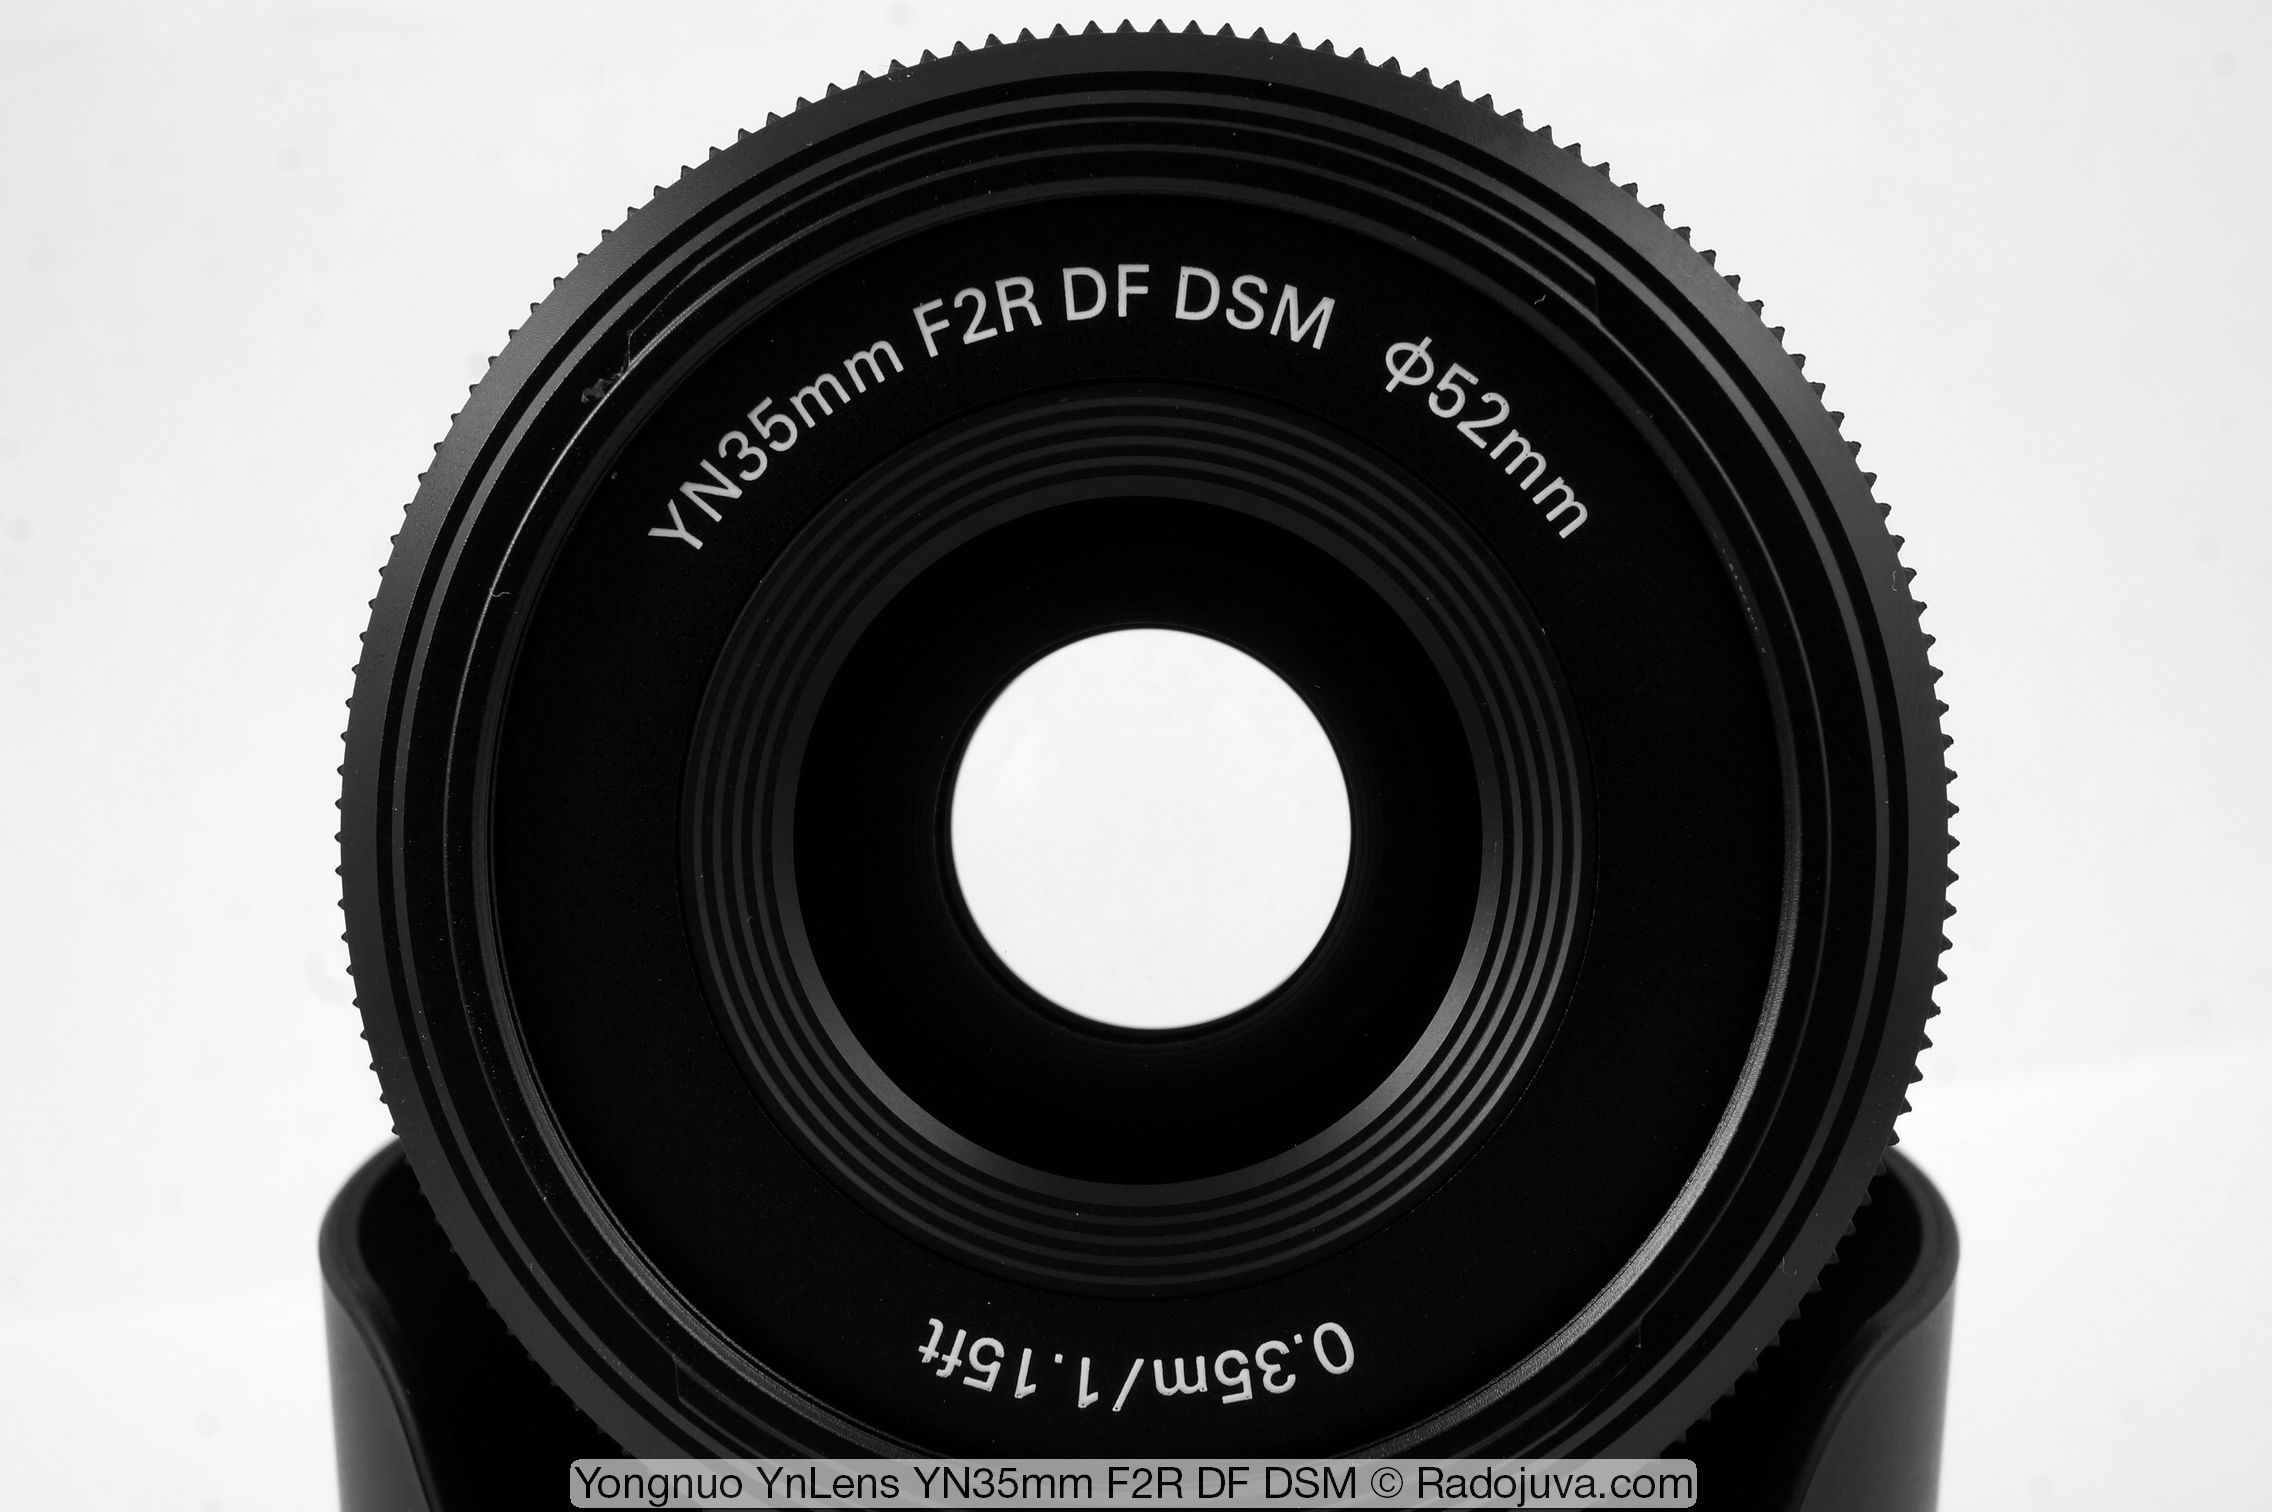 Yongnuo YnLens YN35mm F2R DF DSM